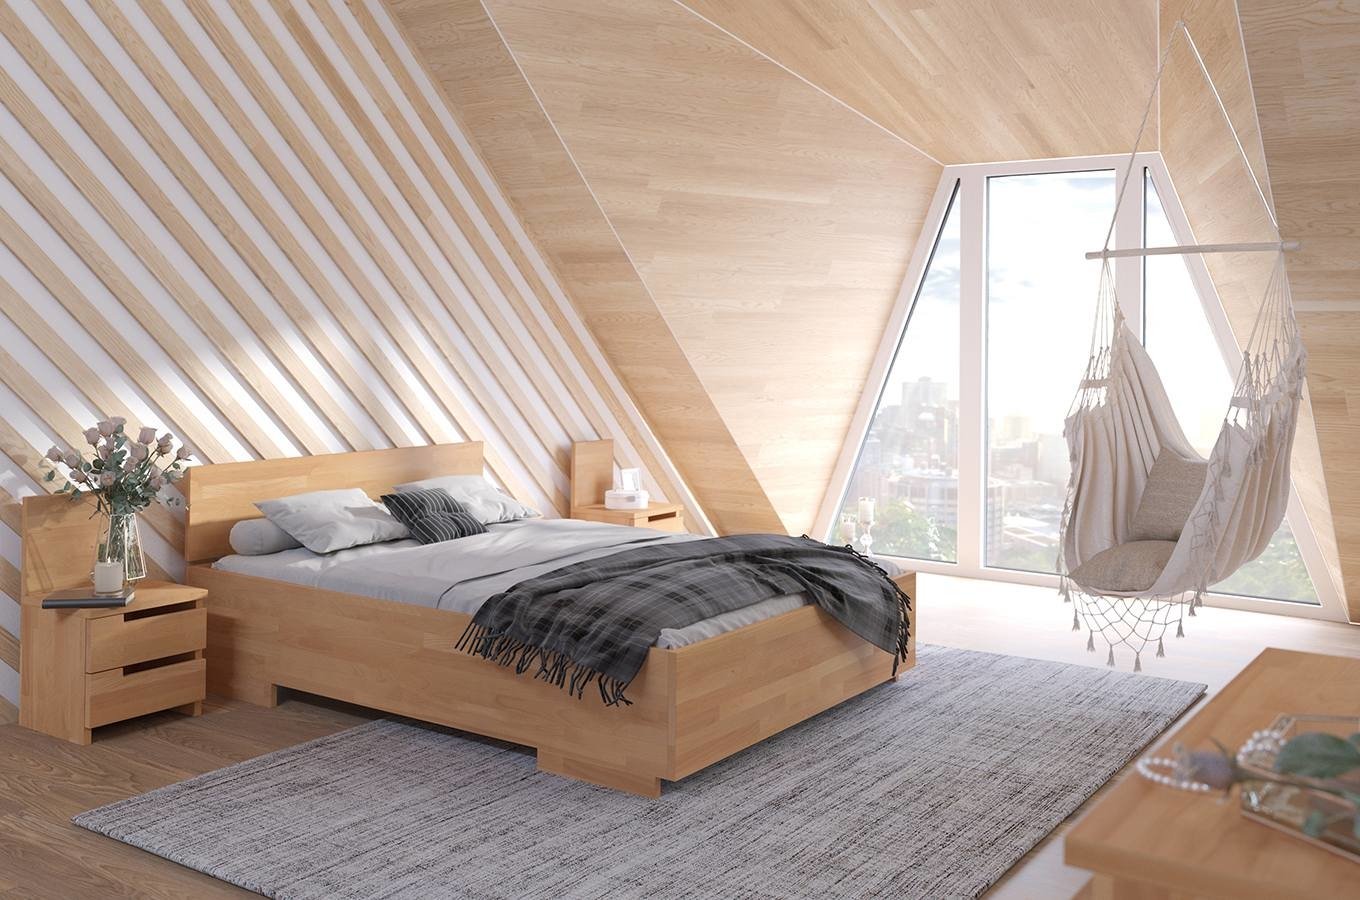 ZESTAW: Łóżko drewniane bukowe Visby BERGMAN High + Materac kieszeniowy Visby NORLAND / z pianką poliuretanową